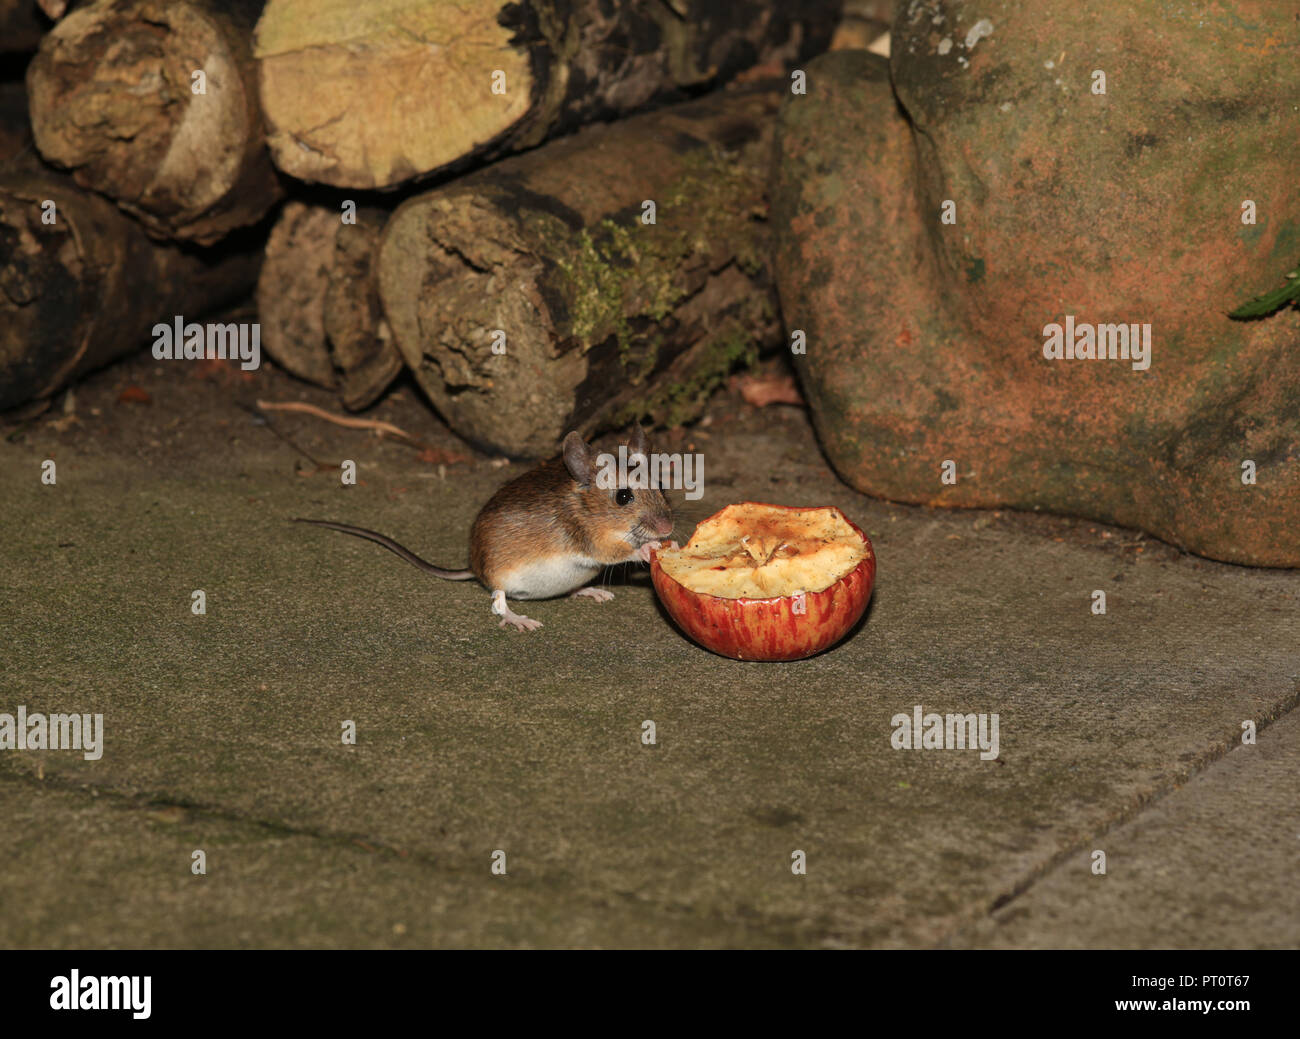 Madera joven Ratón (Apodemus sylvaticus) alimentándose en la mitad de una manzana en un jardín del Reino Unido. Foto de stock